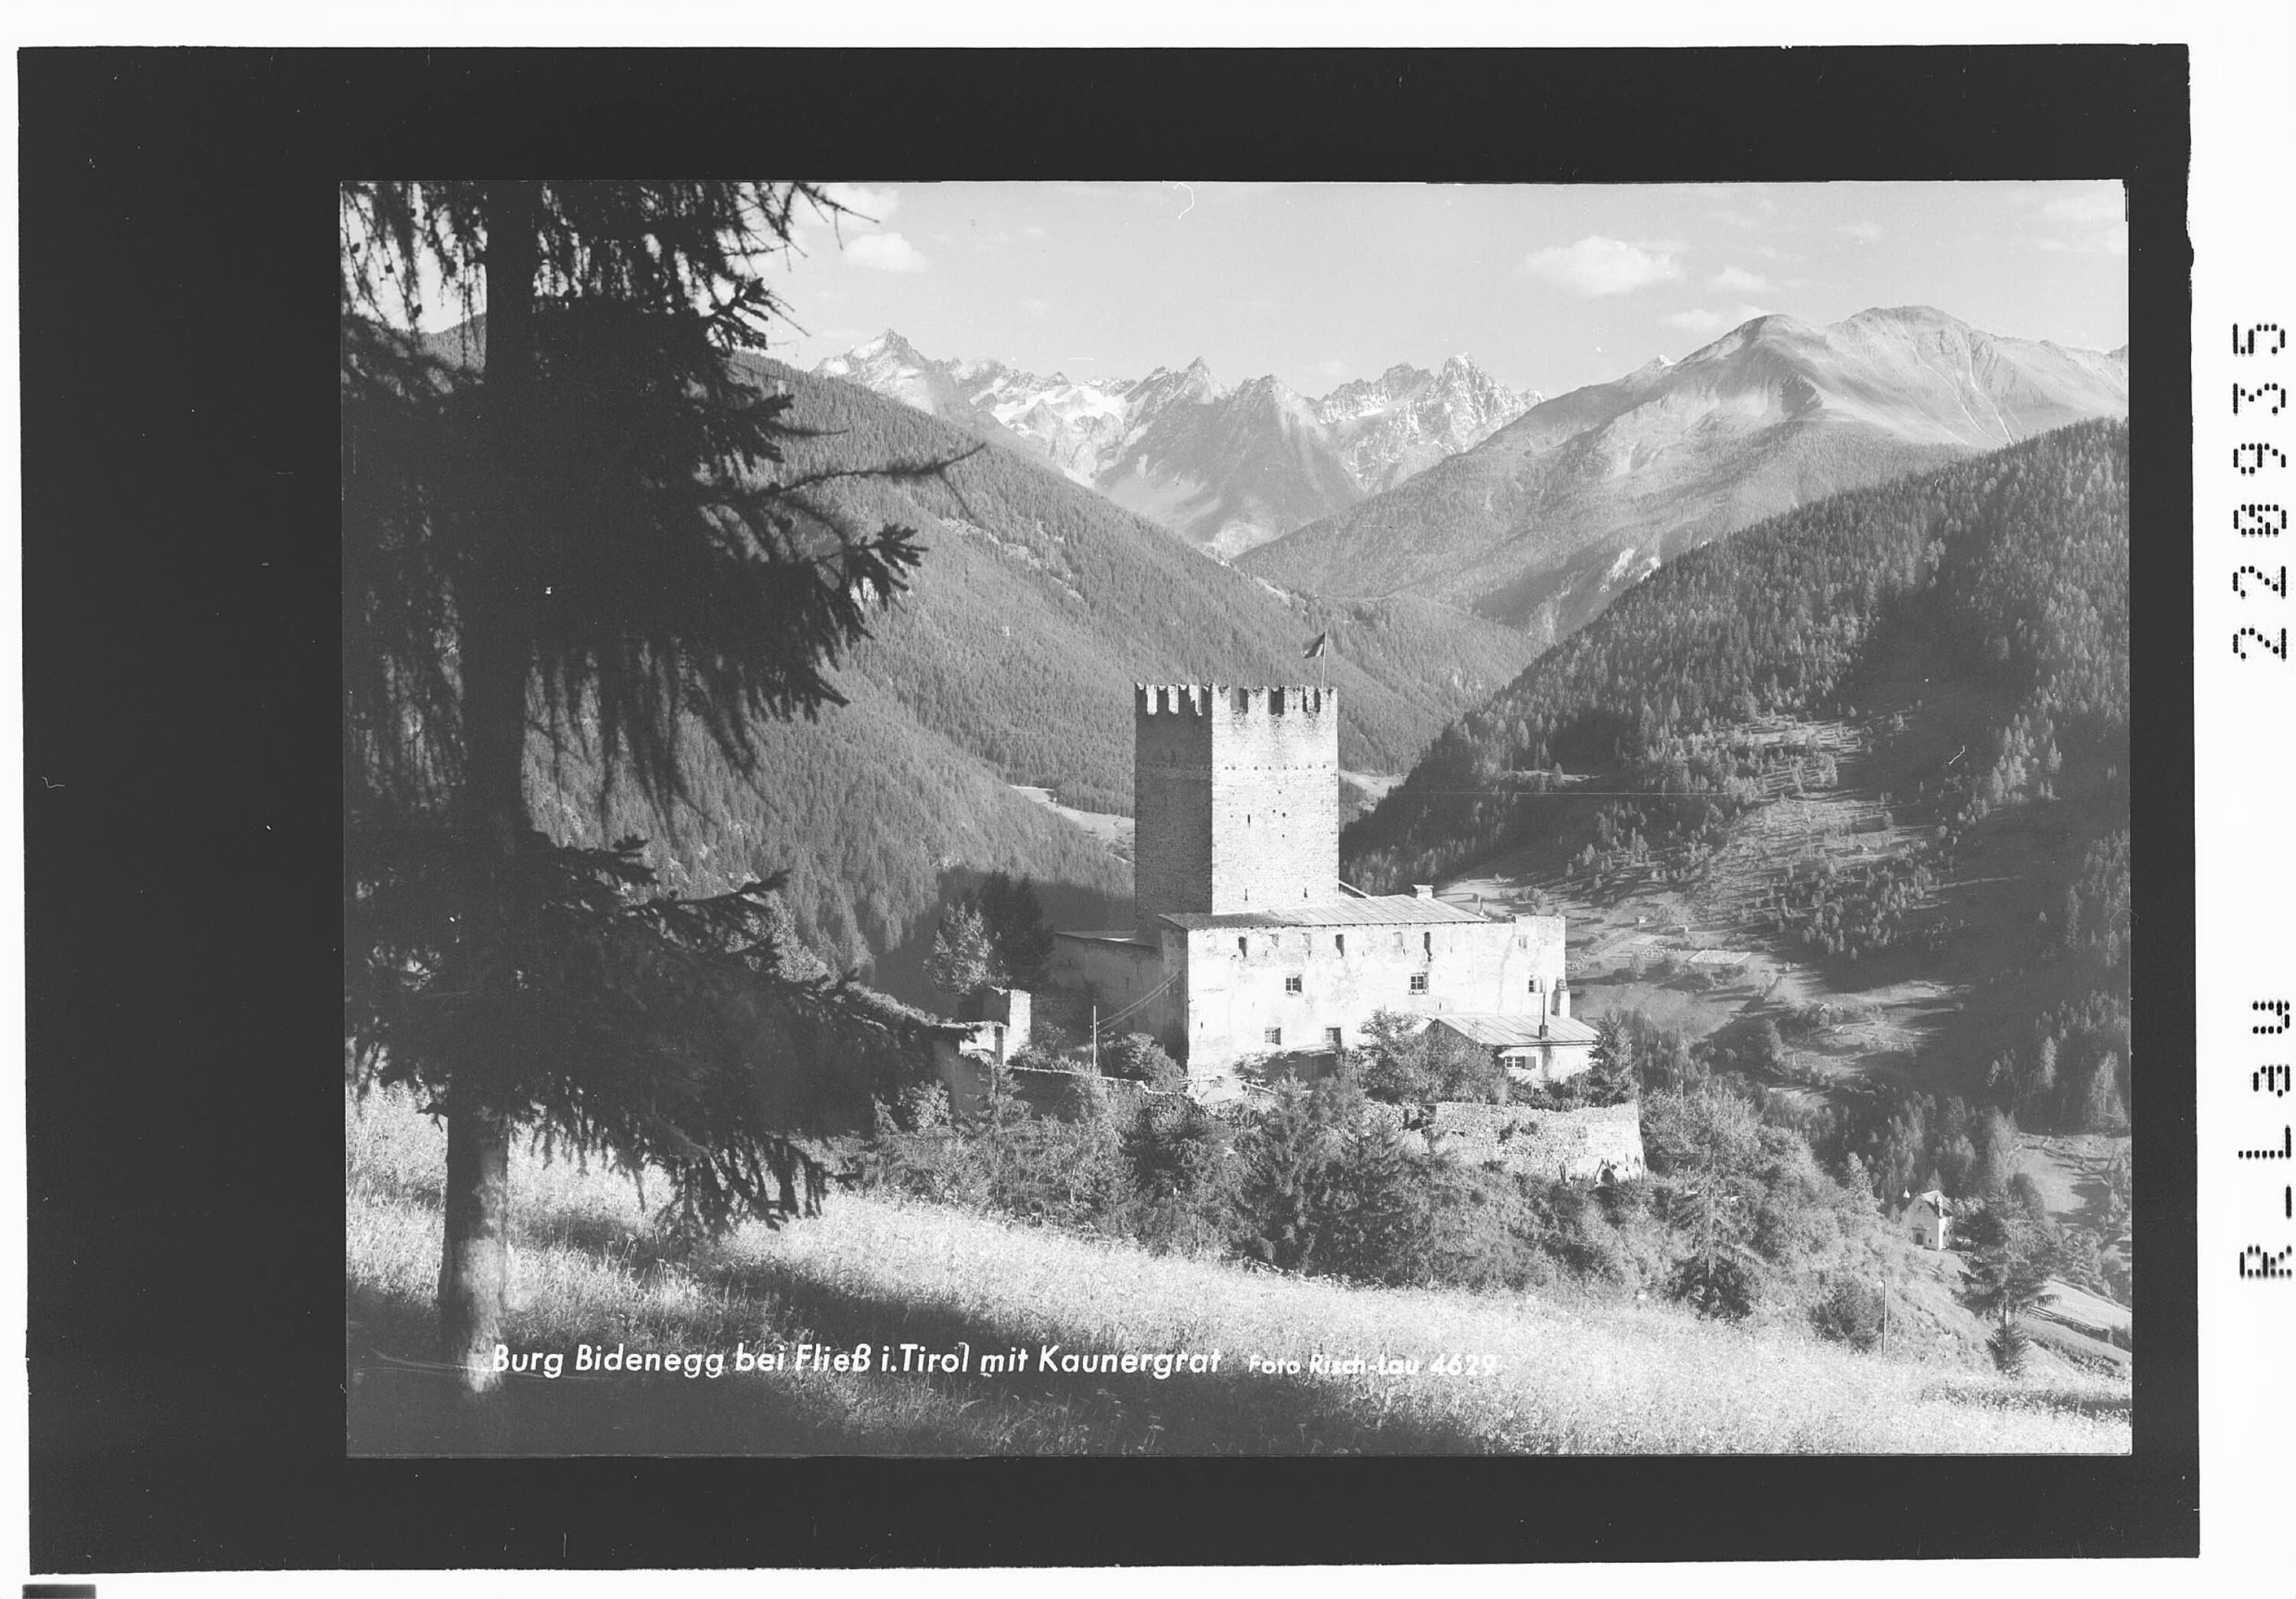 Burg Bidenegg bei Fließ in Tirol mit Kaunergrat></div>


    <hr>
    <div class=